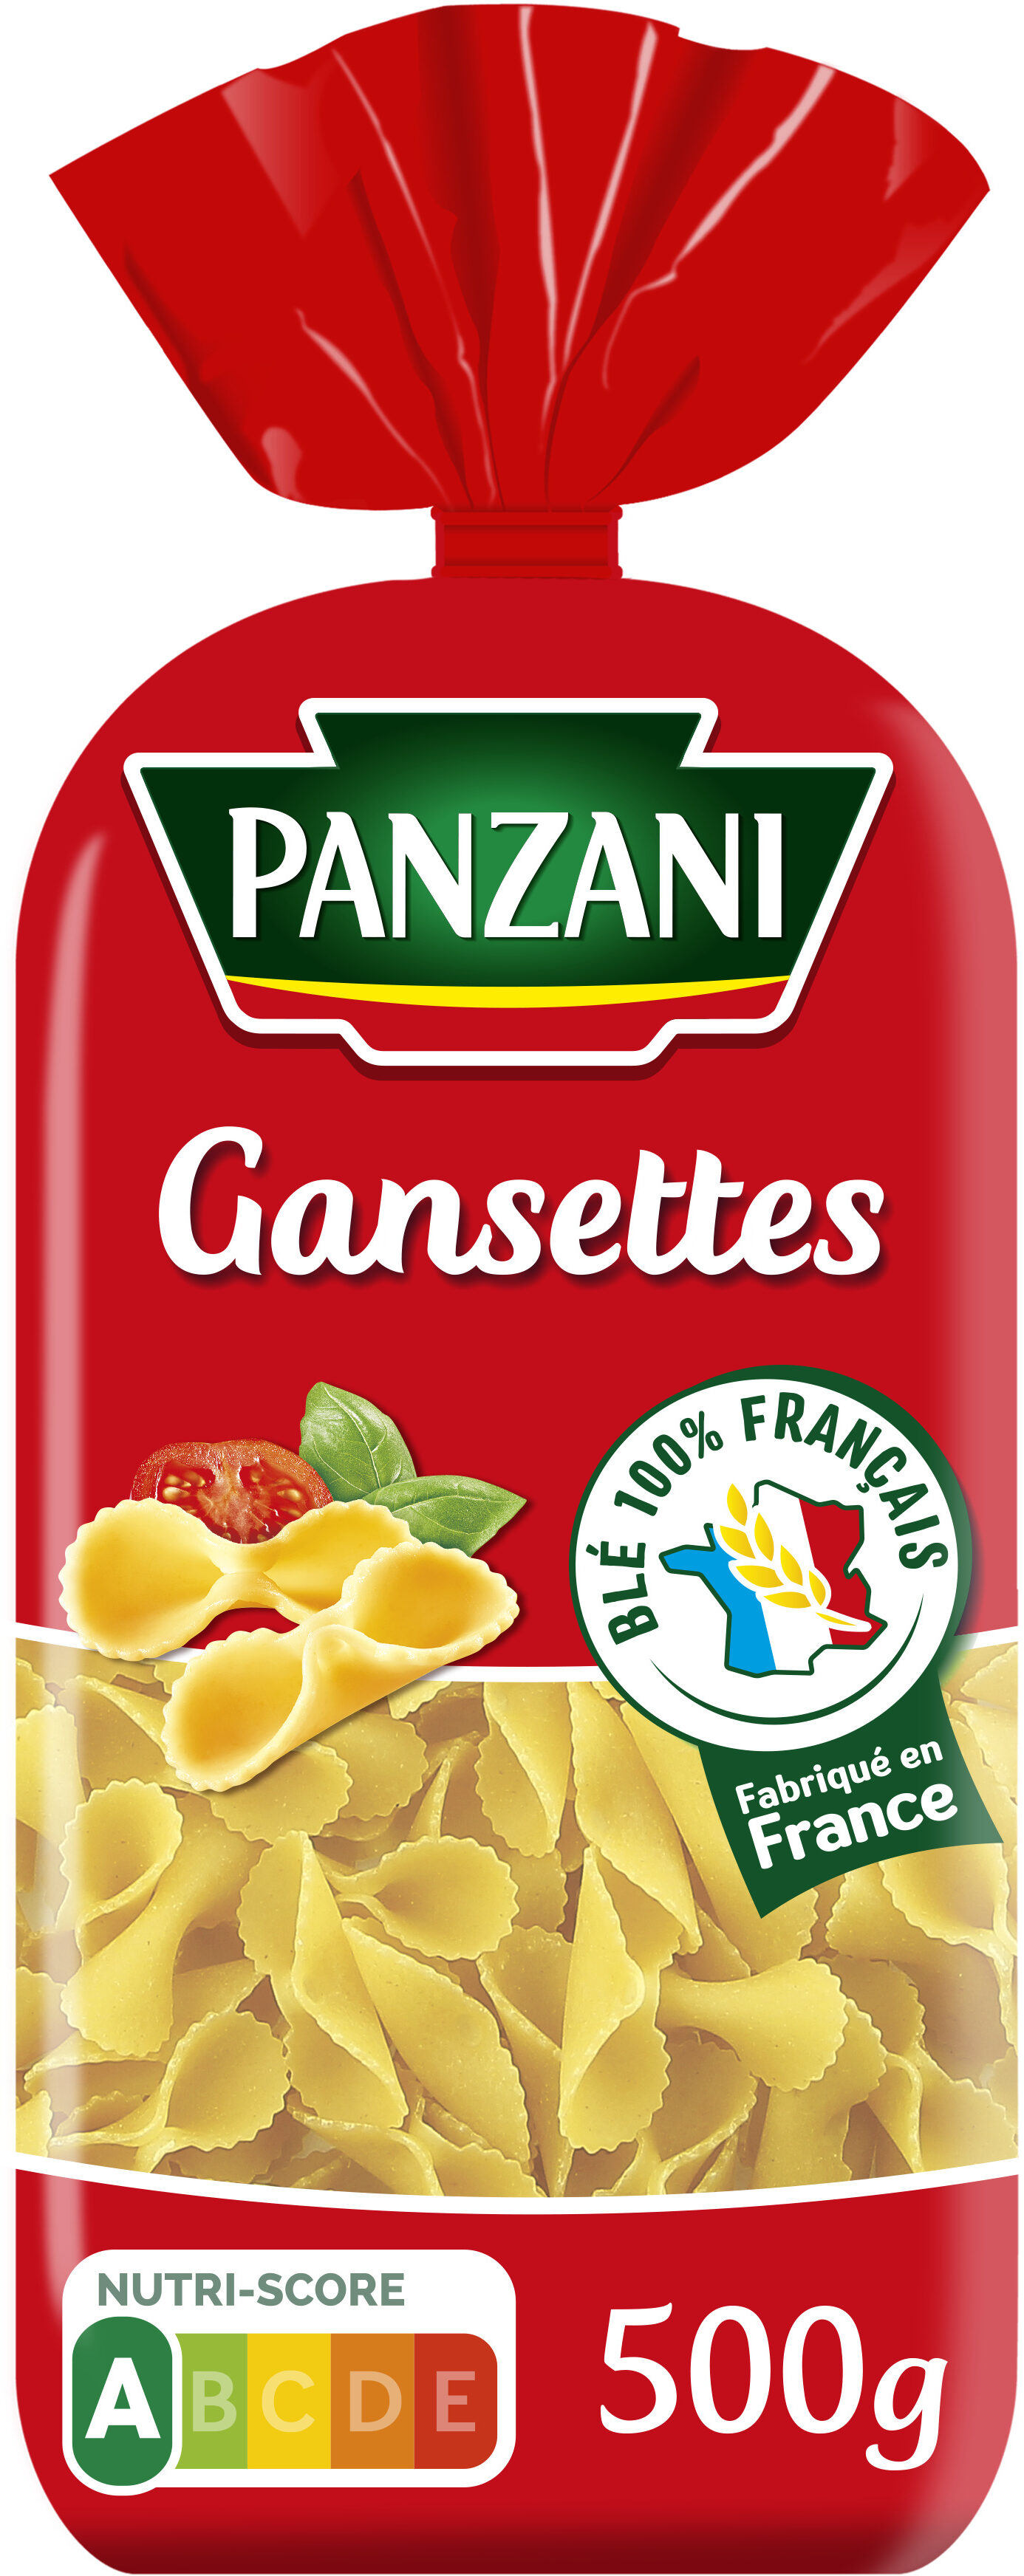 Panzani gansettes 500g - Producto - fr